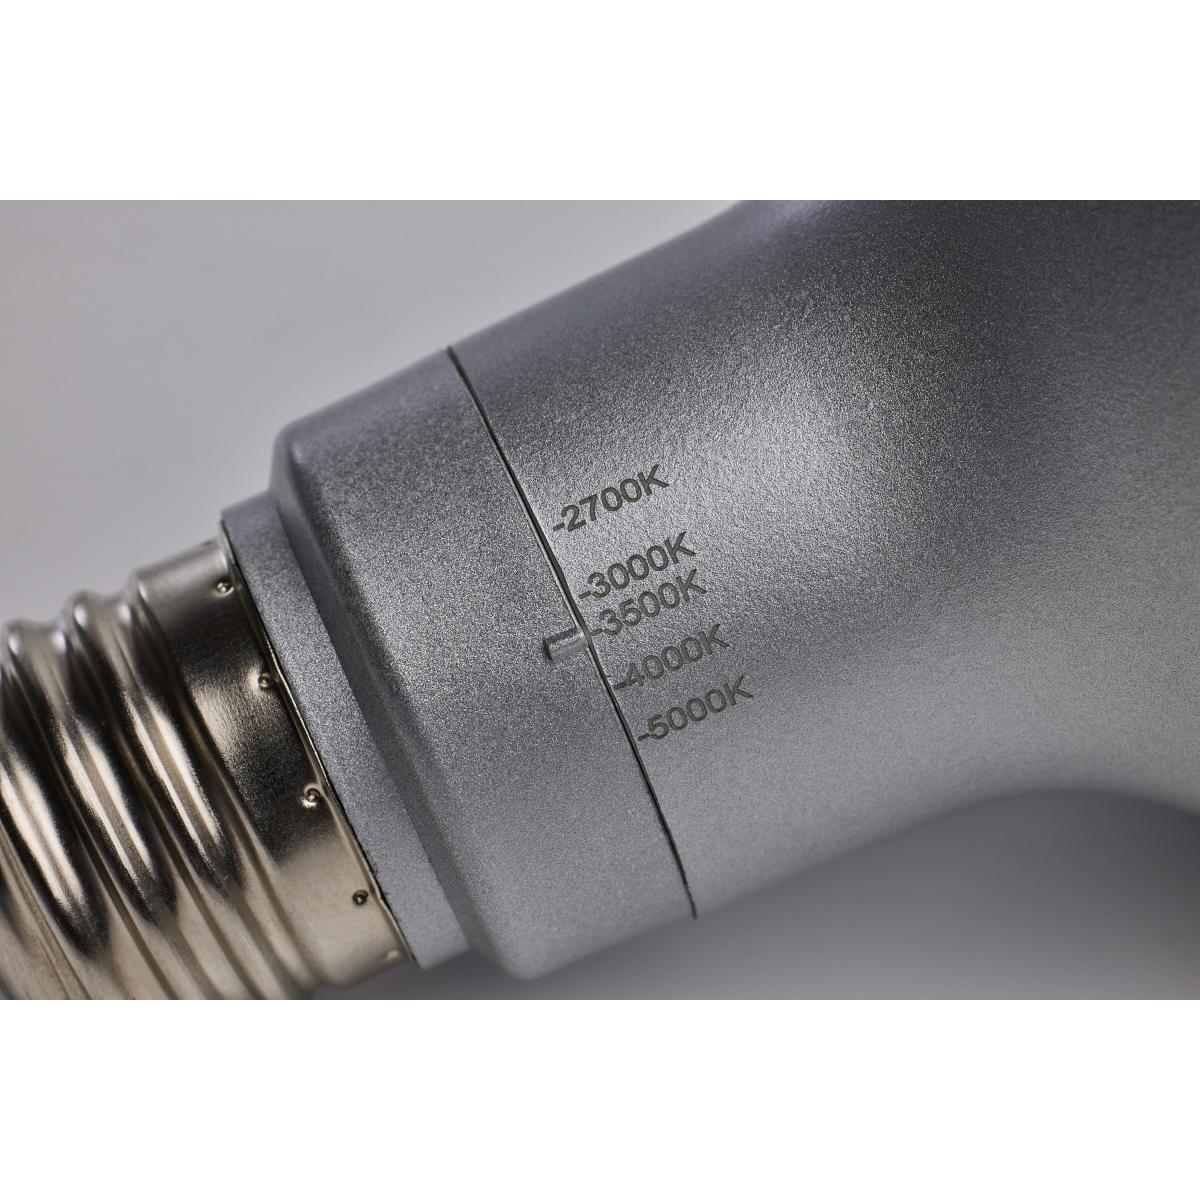 PAR30 Long Neck Reflector LED Bulb, 11 Watt, 1000 Lumens, Selectable CCT 2700K to 5000K, E26 Medium Base, 25 Deg. Spot - Bees Lighting